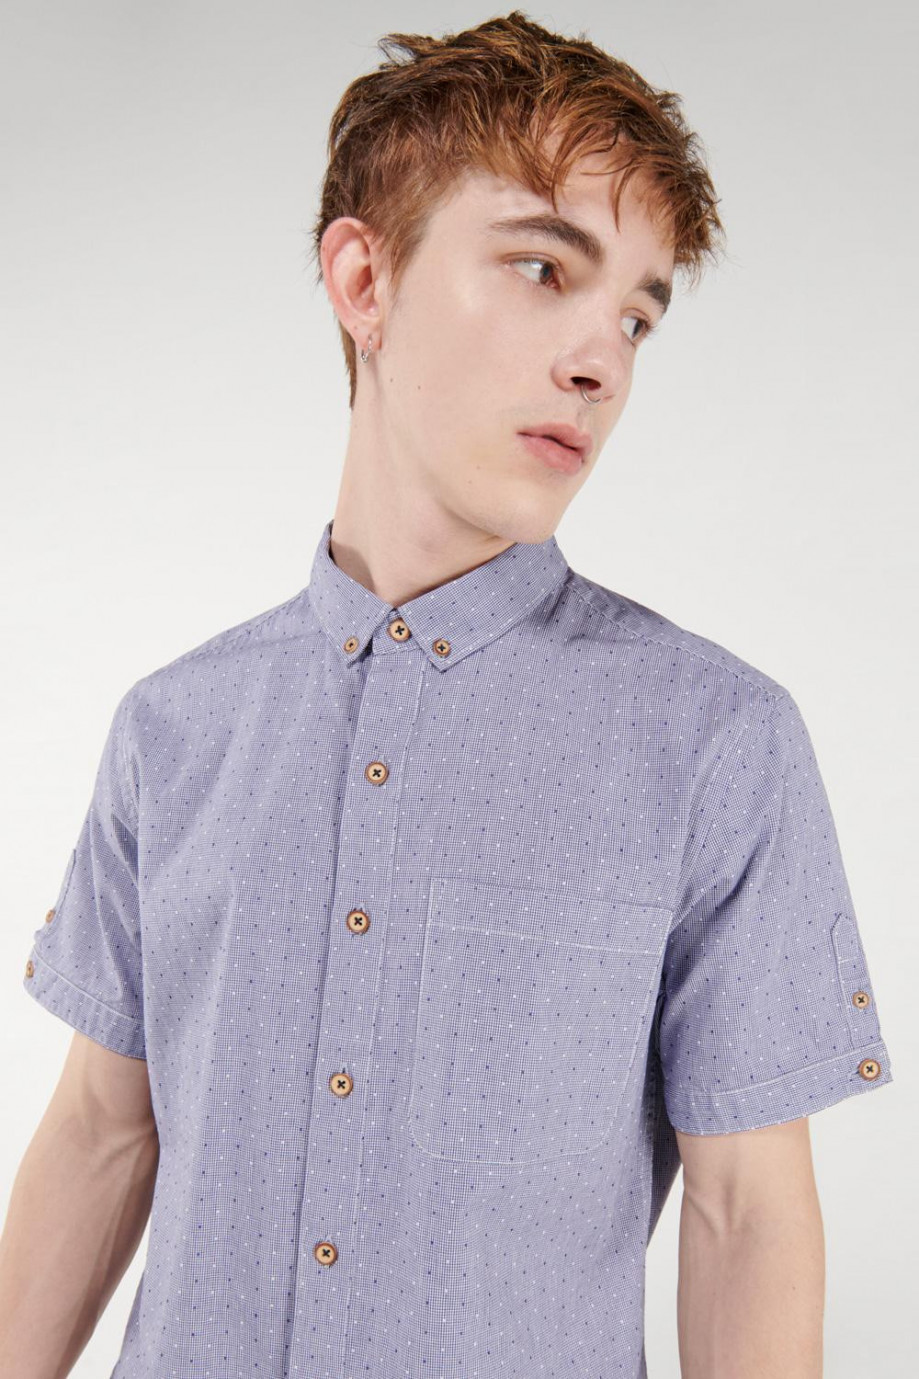 Camisa cuello button down azul clara estampada y manga corta